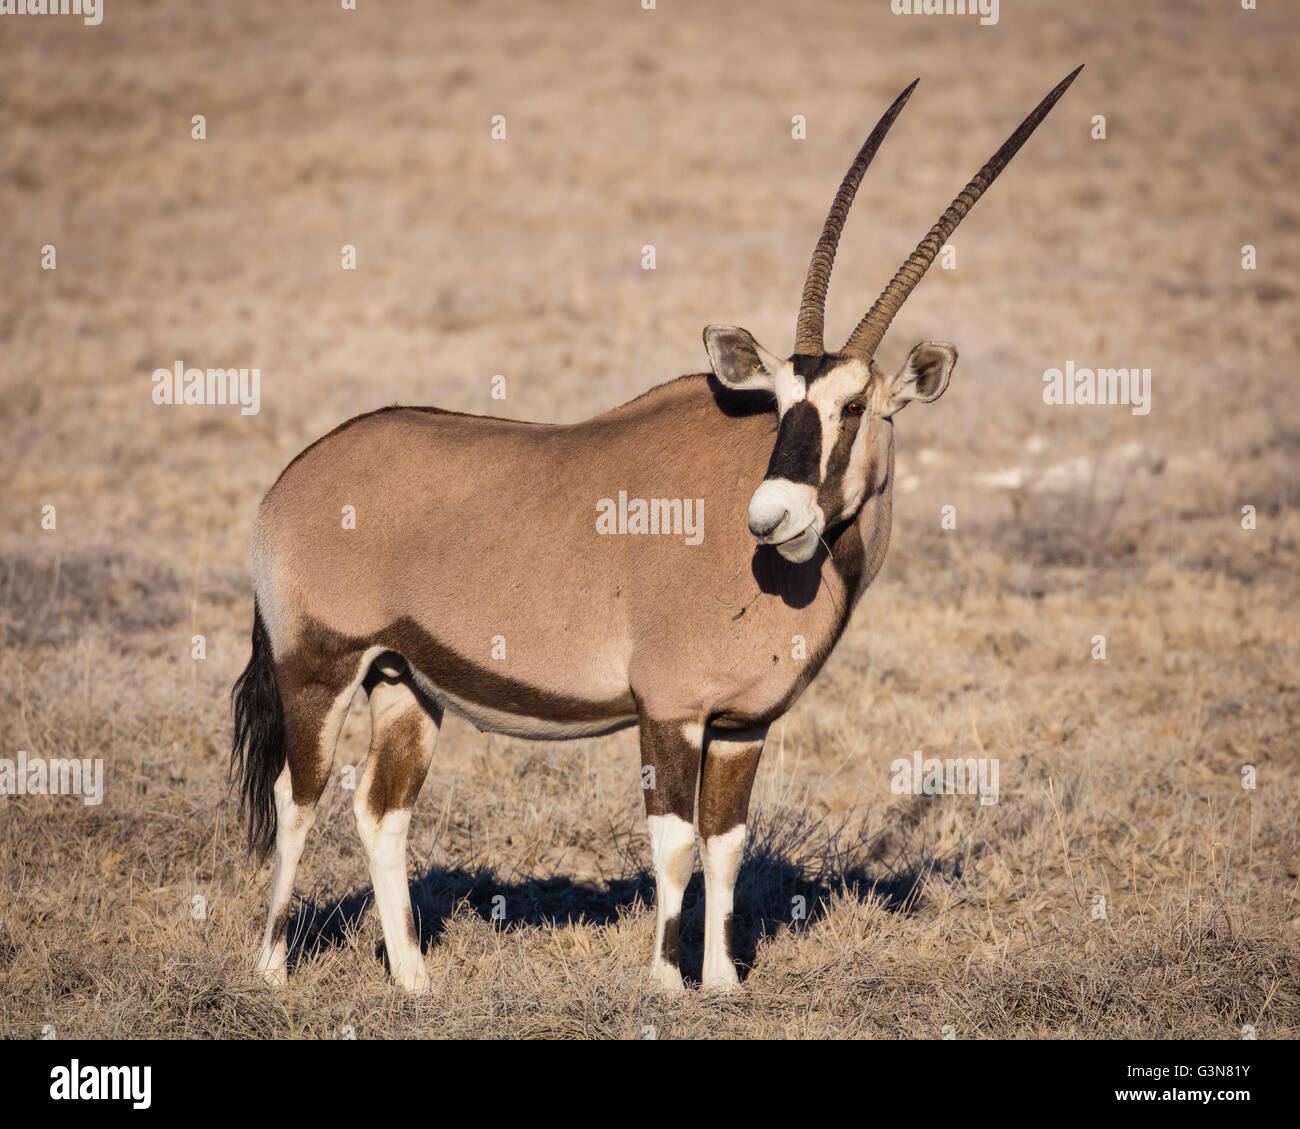 El gemsbuck o gemsbok (Oryx gazella) es un gran antílope oryx en el género Foto de stock